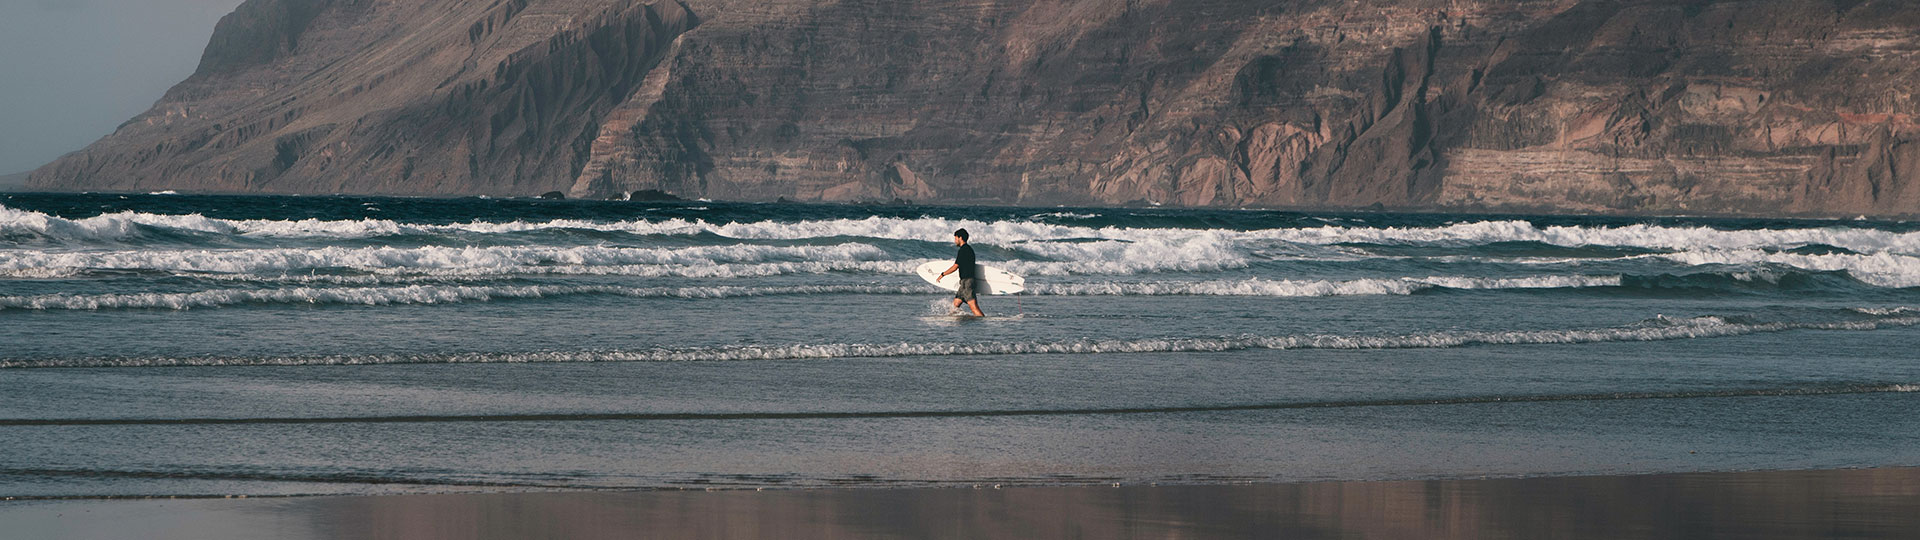 Surfer auf Lanzarote